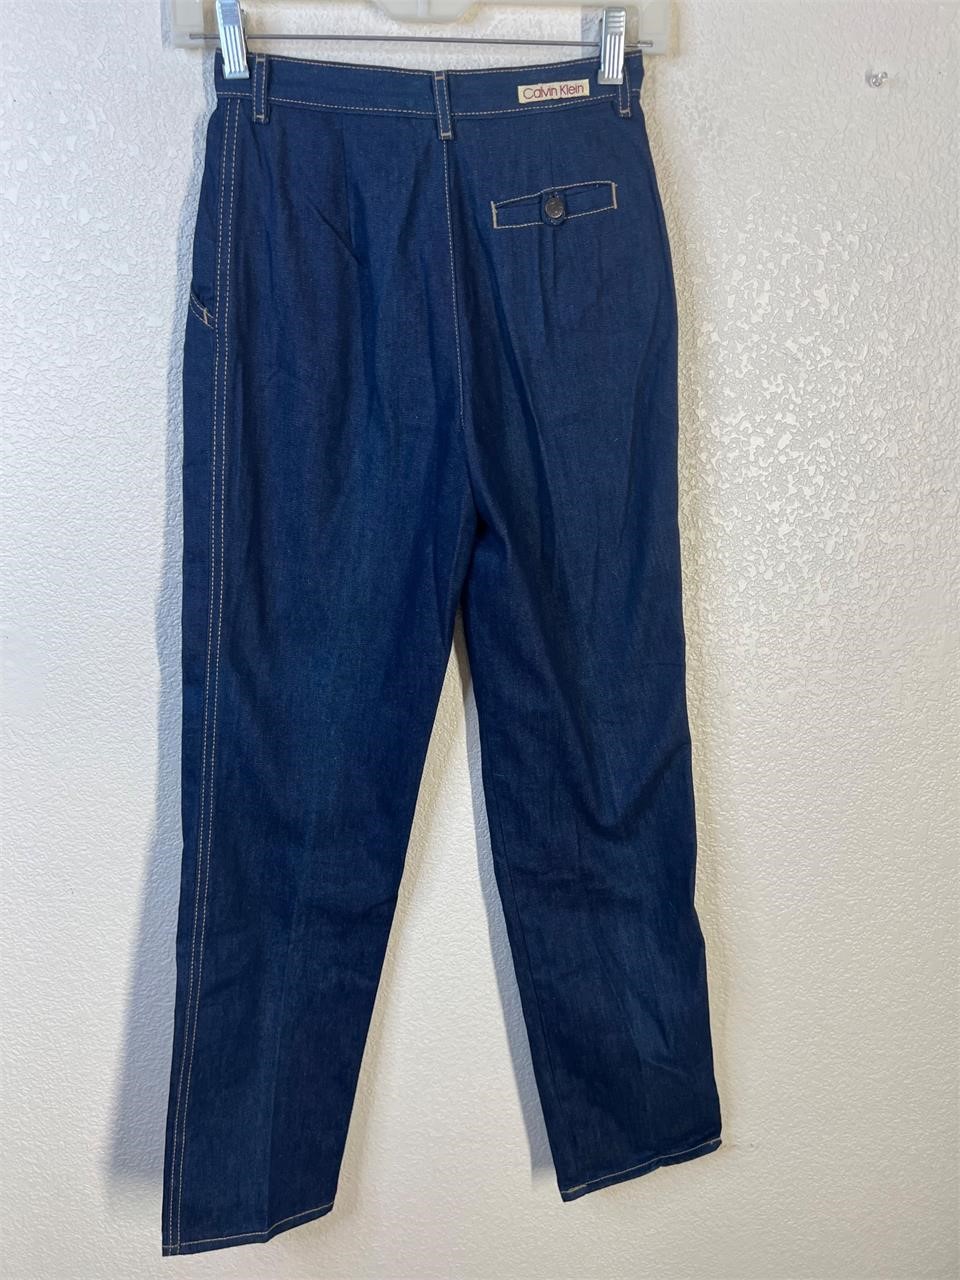 Vintage 80s Calvin Klein Jeans Pants